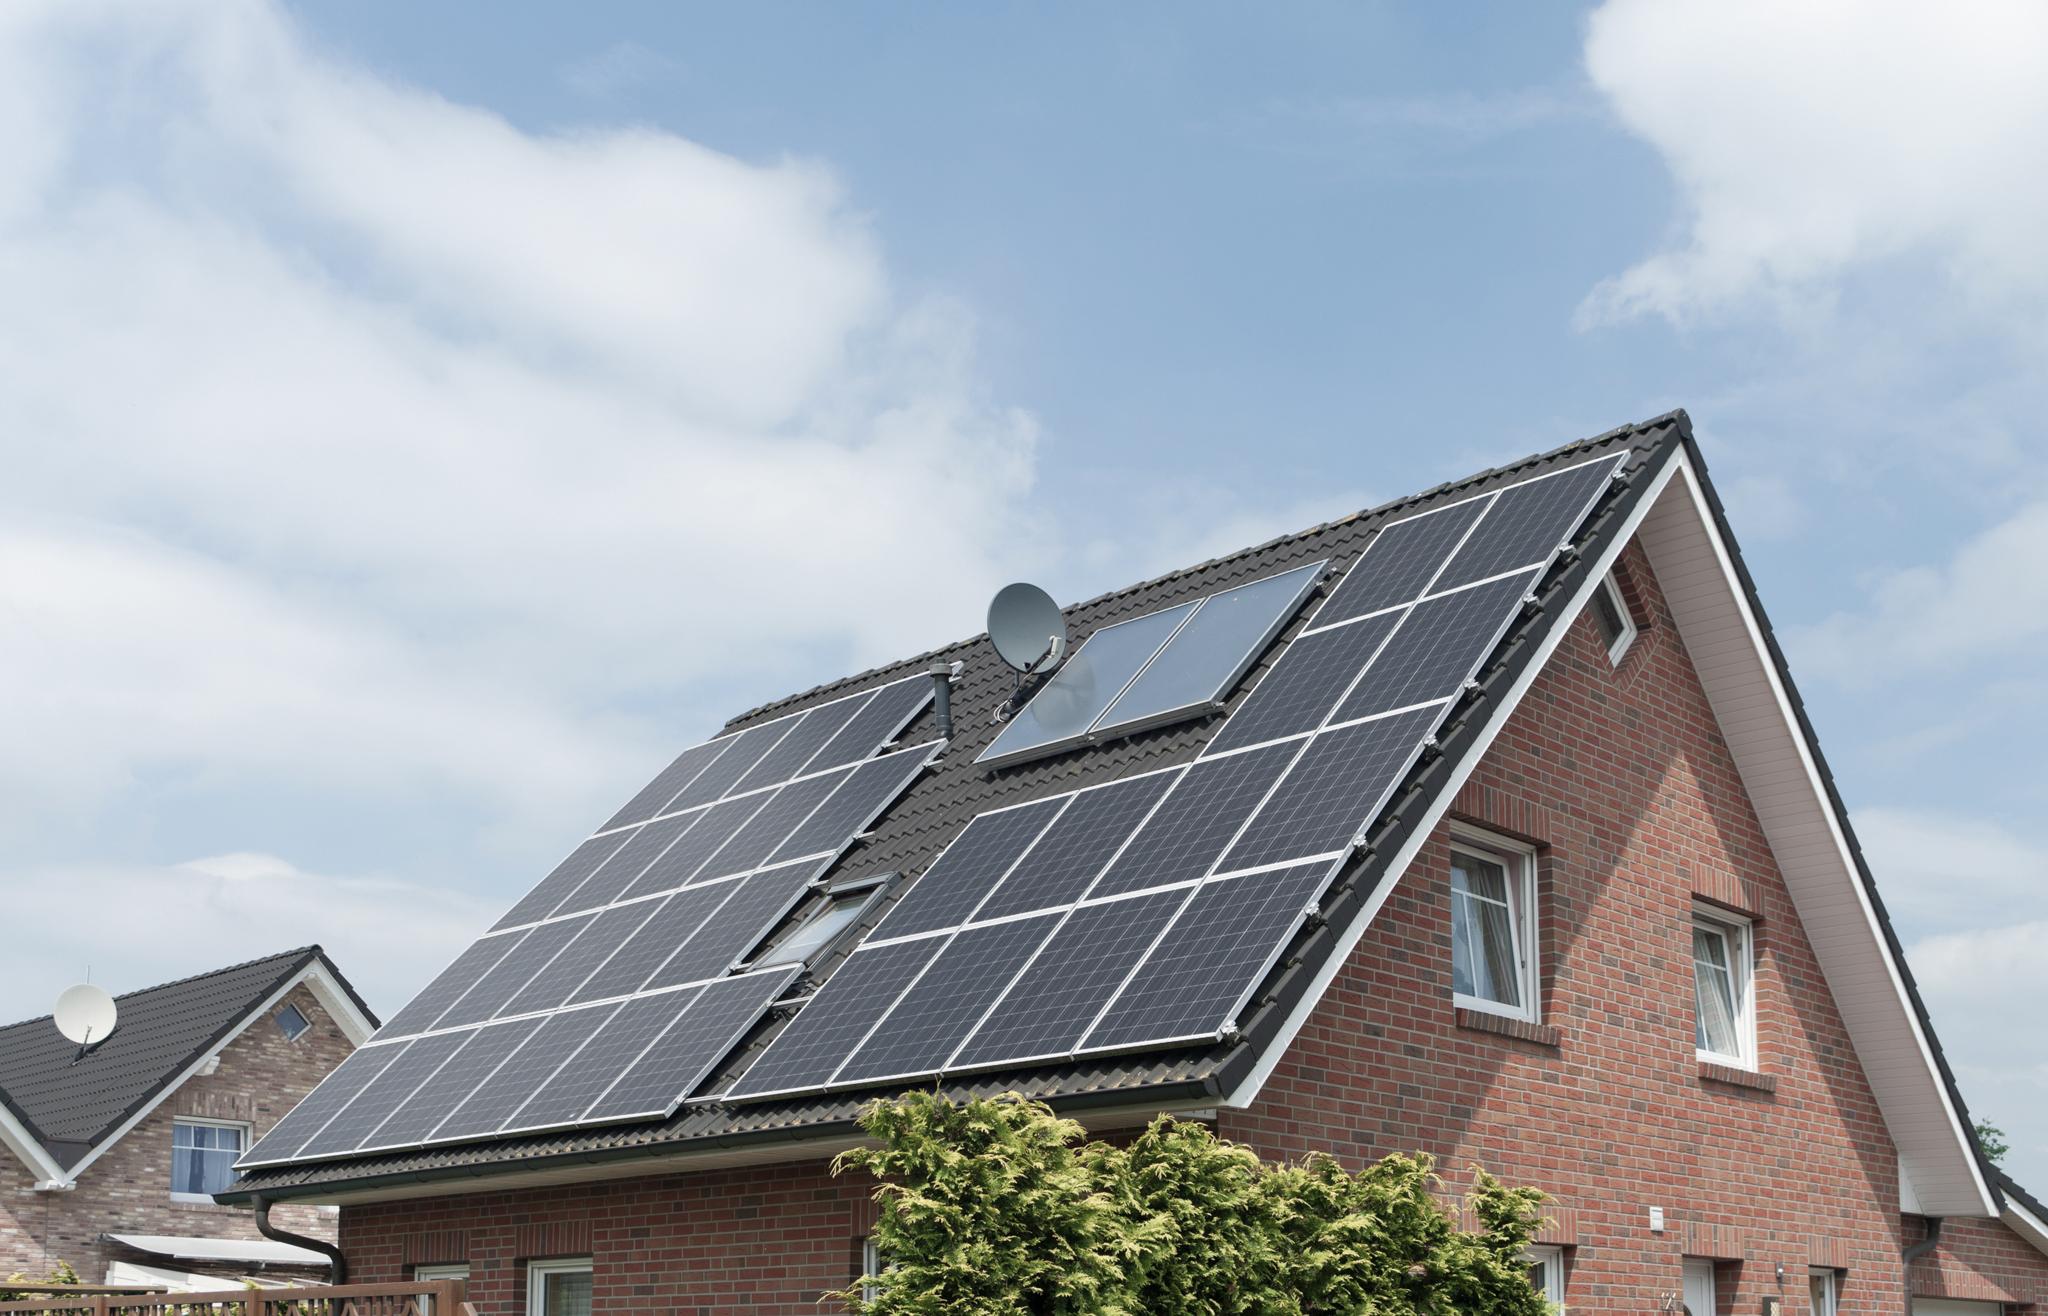 Einfamilienhaus mit Solaranlage auf dem Dach – KfW Förderung für PV-Anlagen 